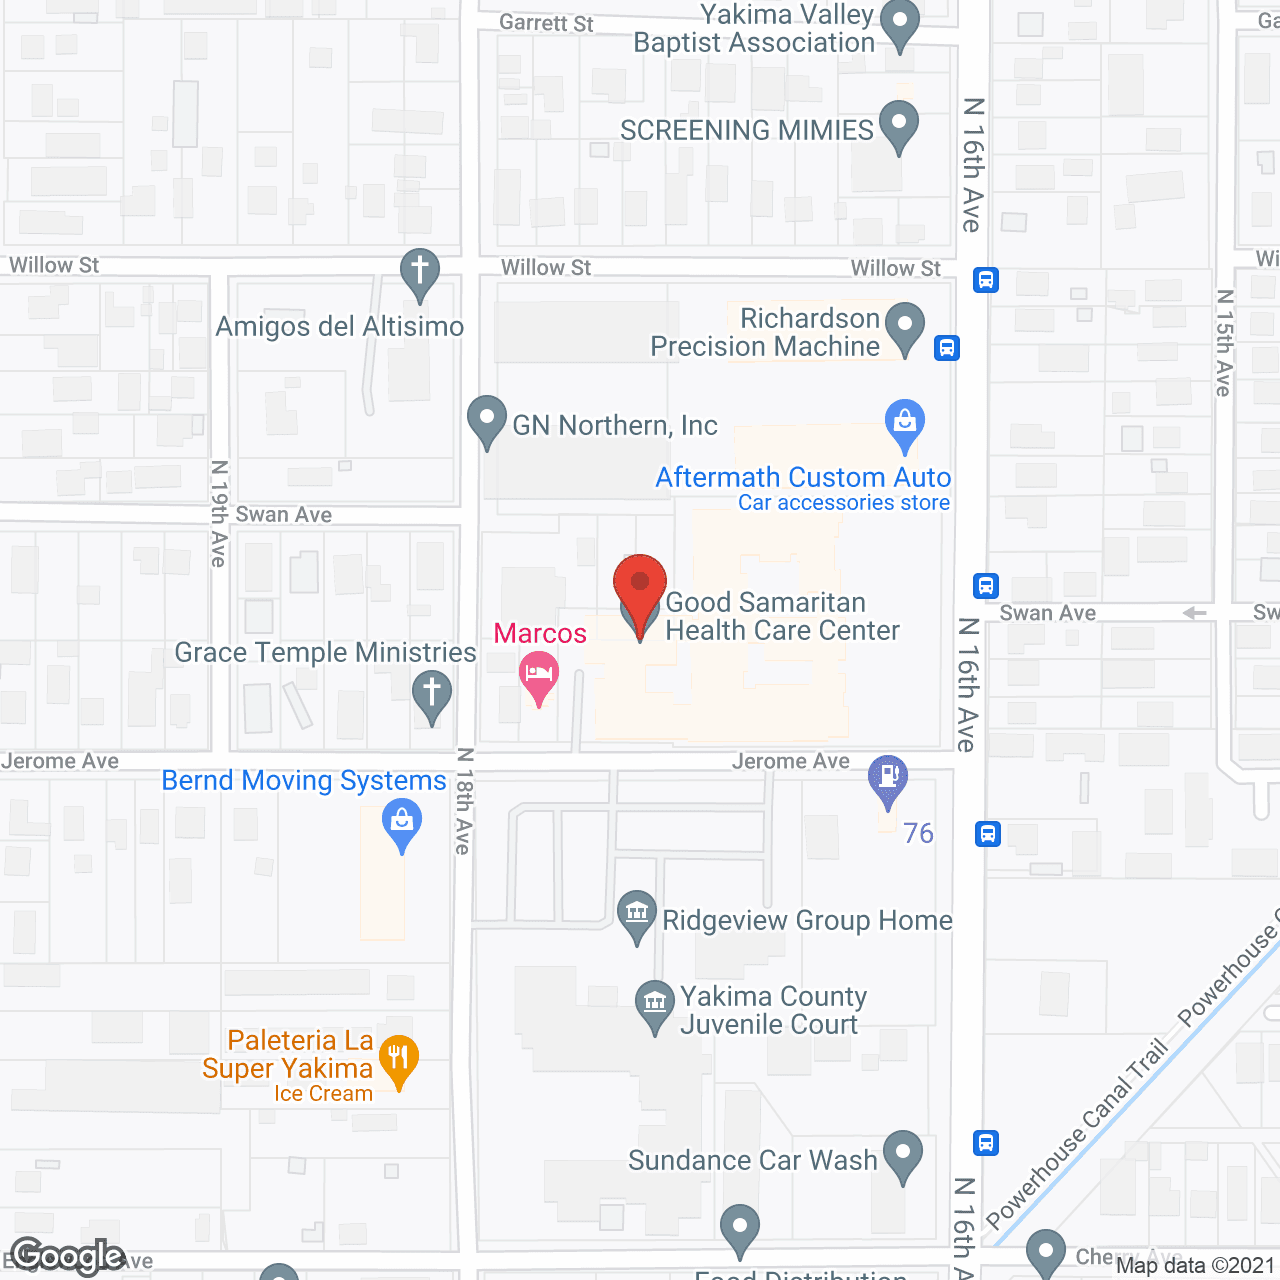 Good Samaritan Health Care Center in google map